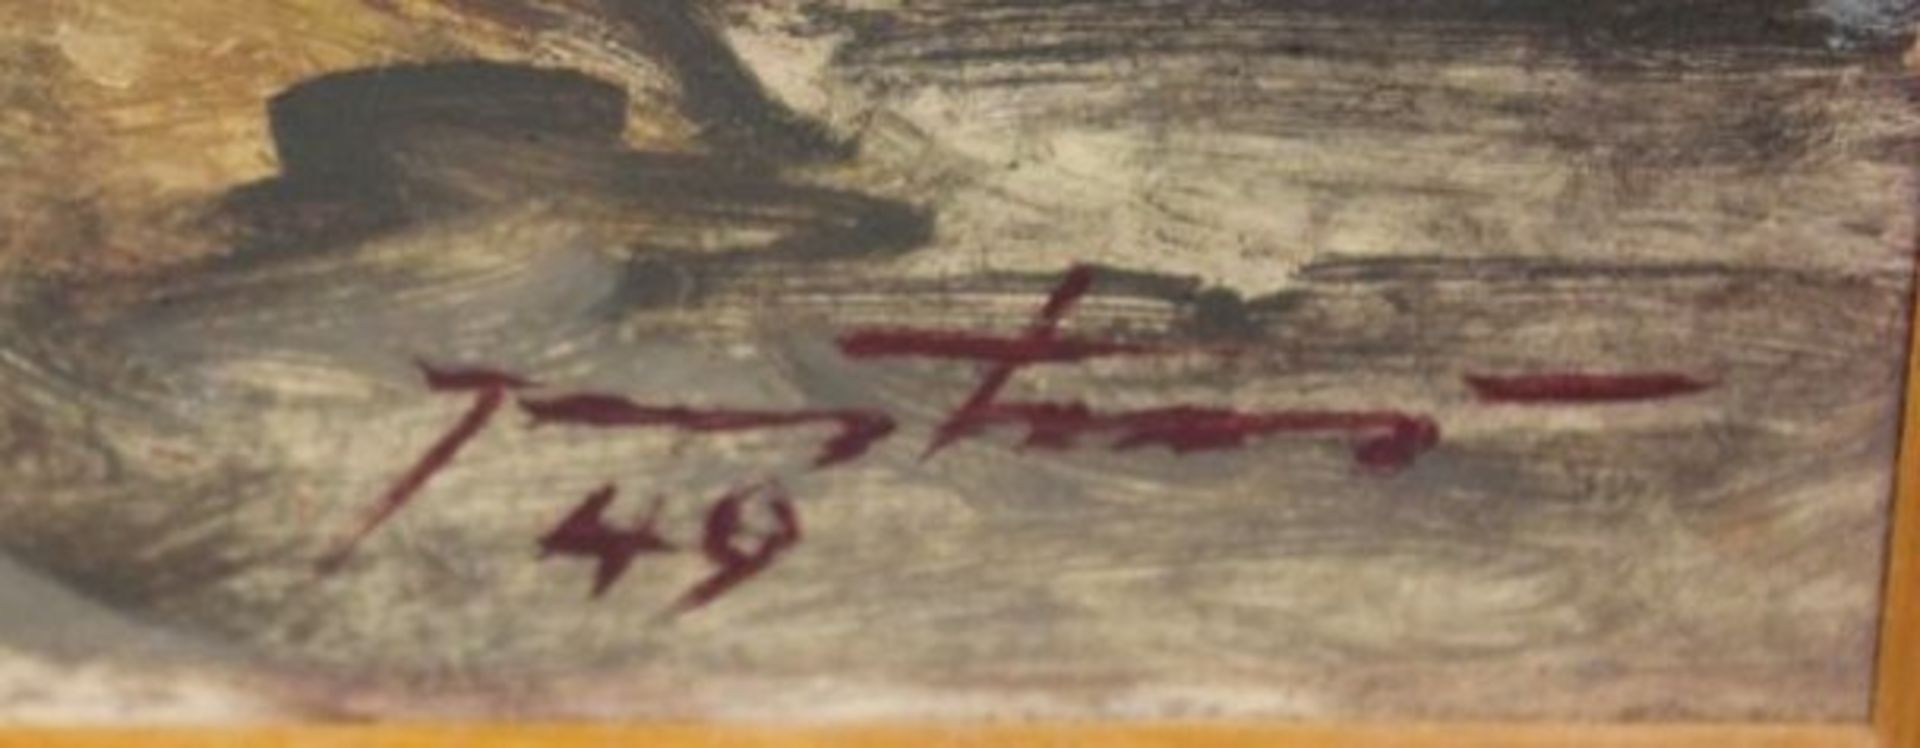 unleserl. signierter weibl. Akt, datiert (19)49, Öl/Hartfaser, gerahmt, RG 44,5 x 34,5cm.< - Bild 2 aus 3